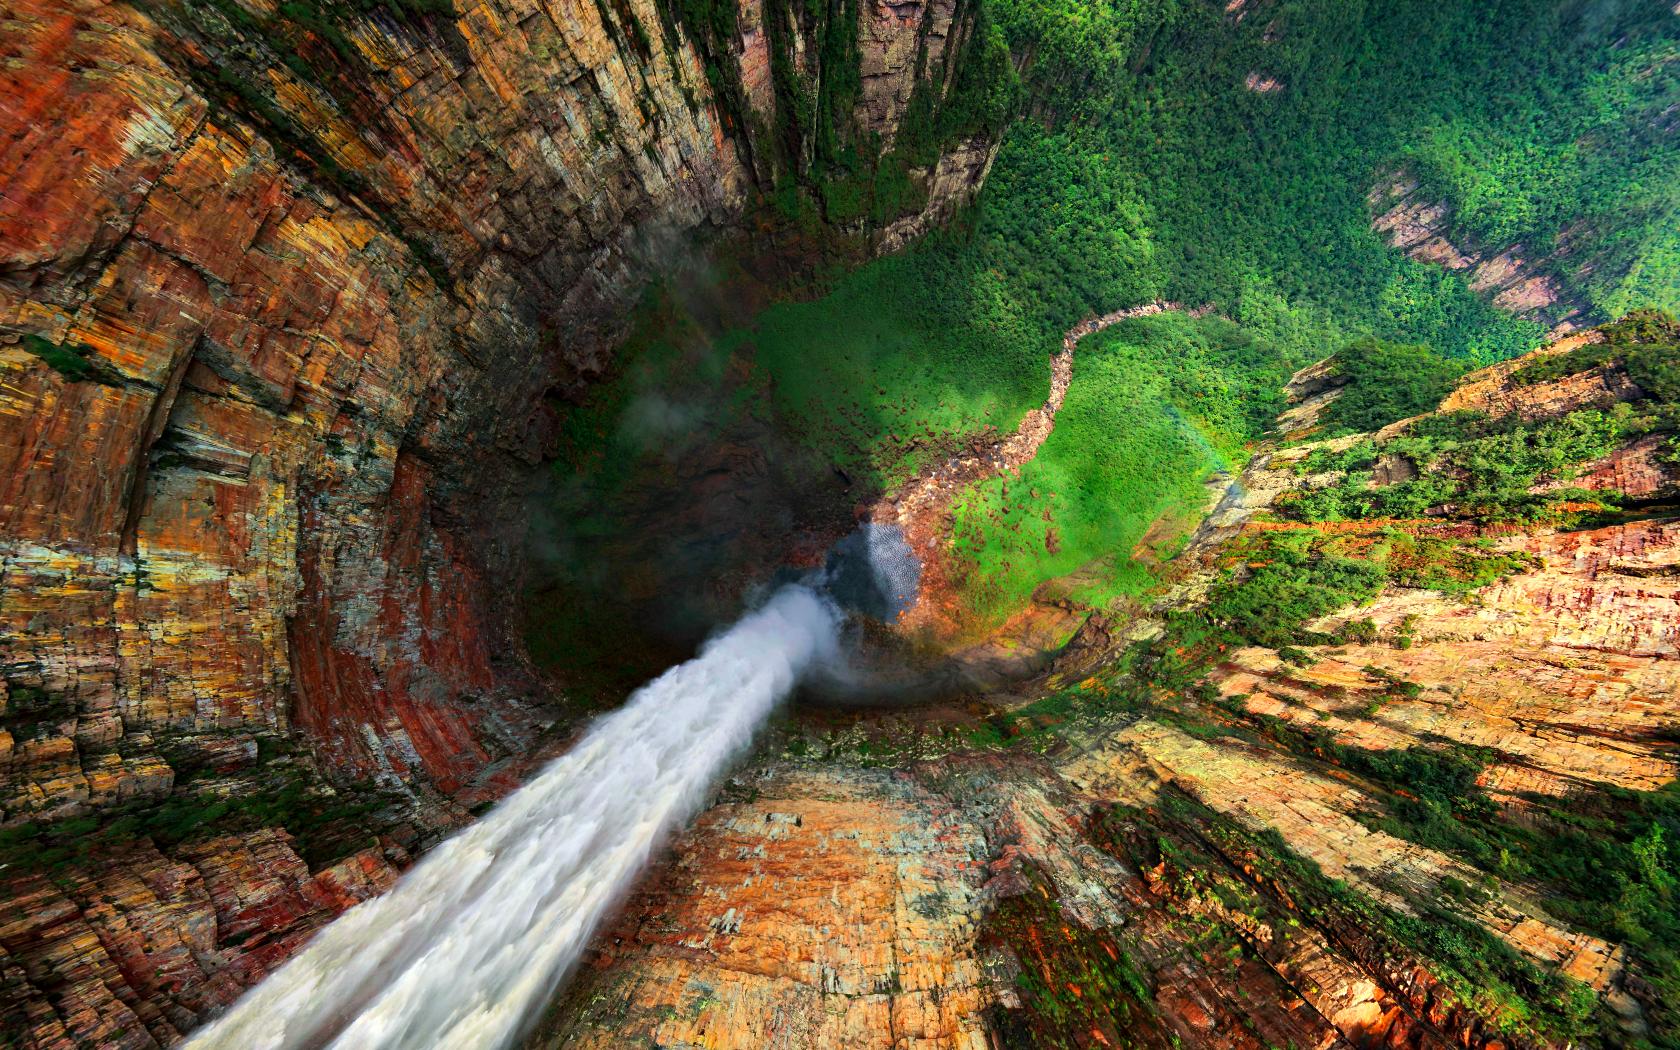 تصویر حیرت برانگیز آبشار فوق العاده خنک منتهی به یک دره سرسبز از زاویه بالا